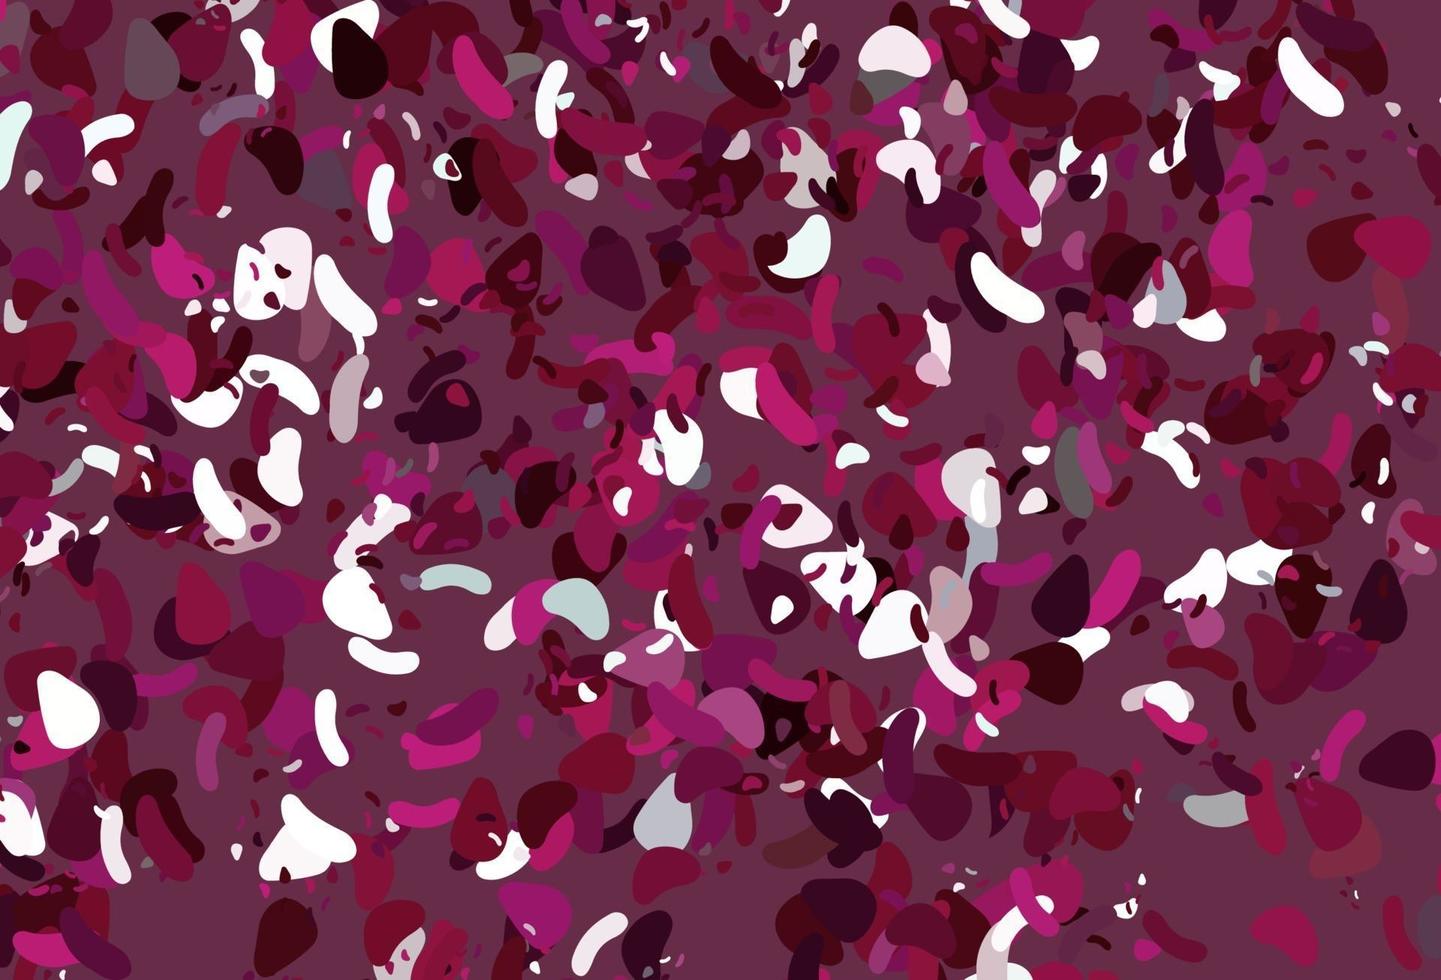 modello vettoriale rosa chiaro con forme caotiche.